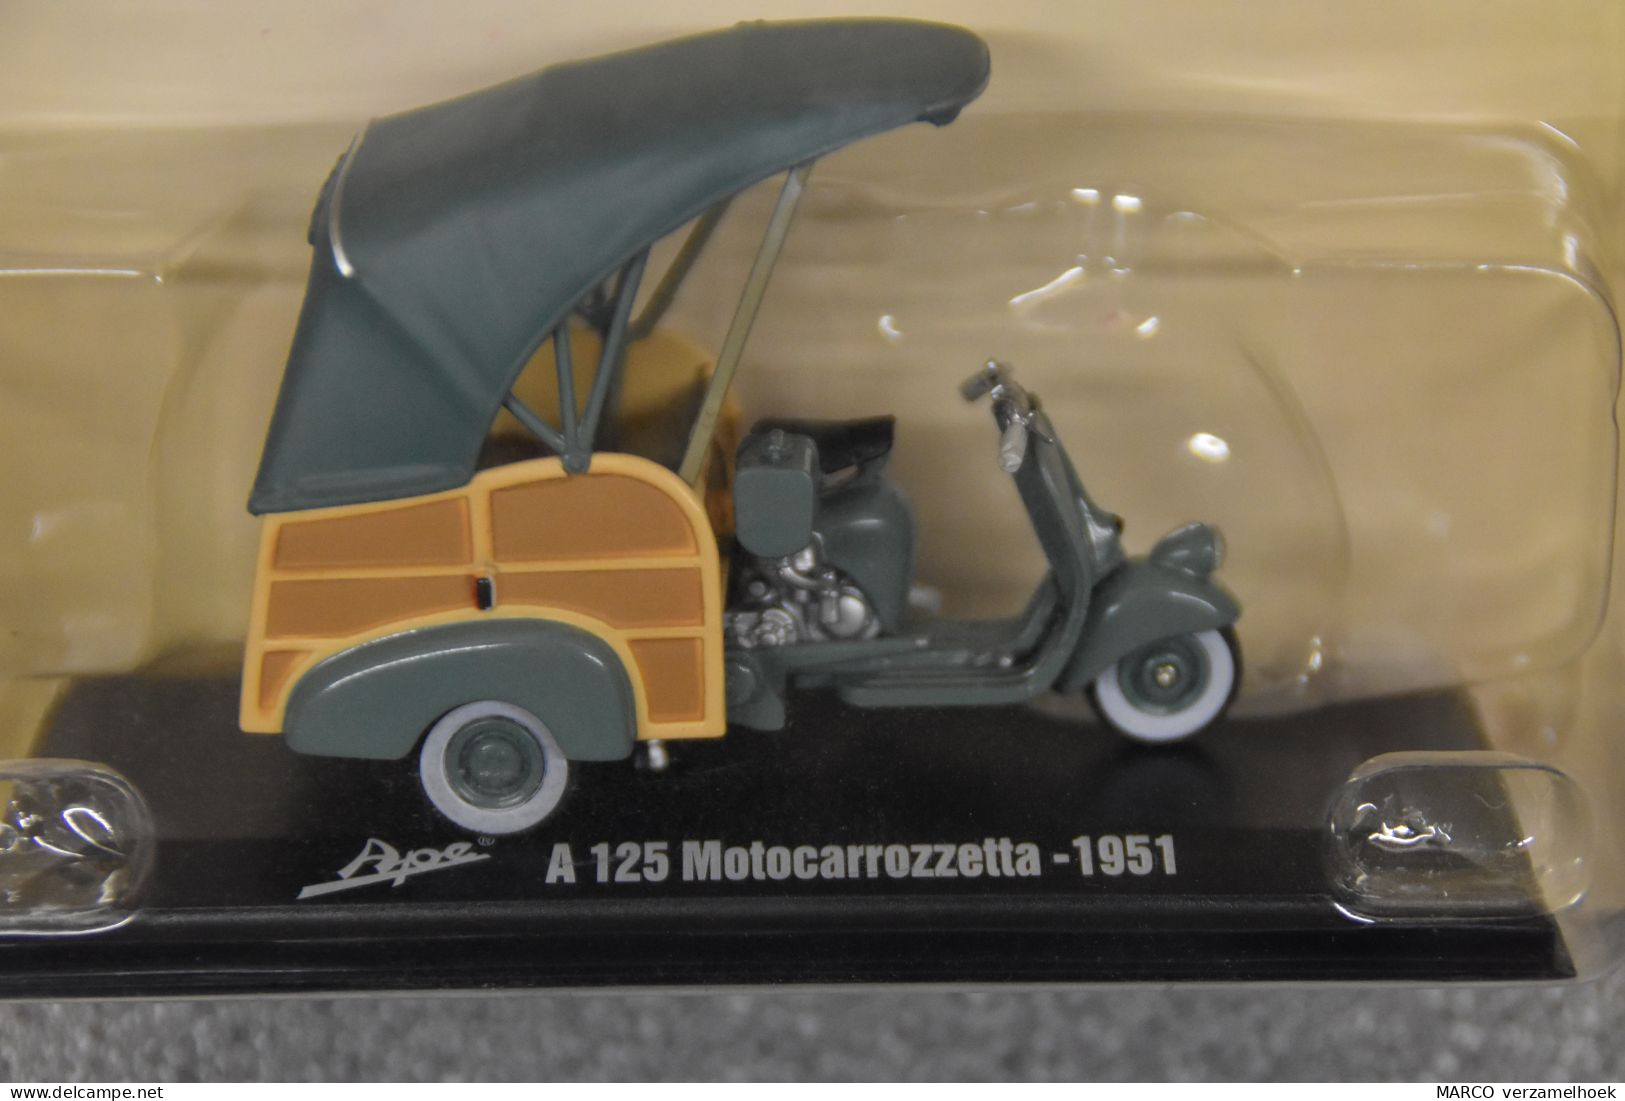 Vespa Ape A125 Motocarrozetta 1951 Hachette Fascicoli Srl. Milano Italy (I) Scale 1:32 - Massstab 1:32